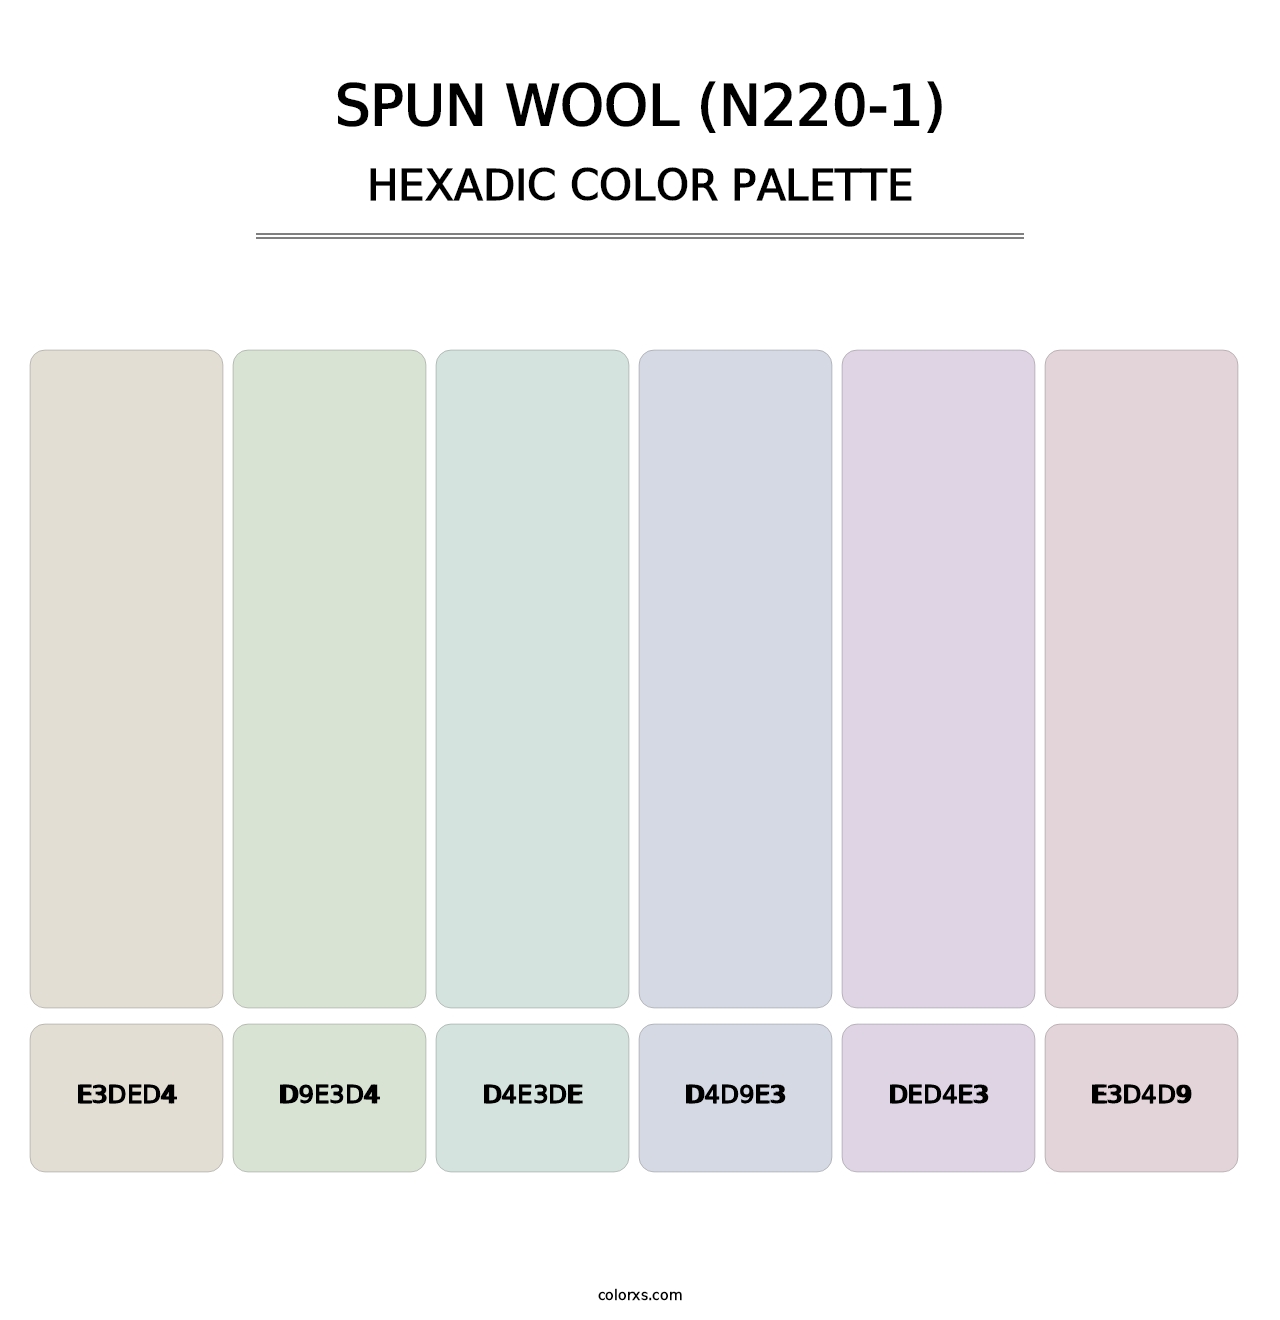 Spun Wool (N220-1) - Hexadic Color Palette